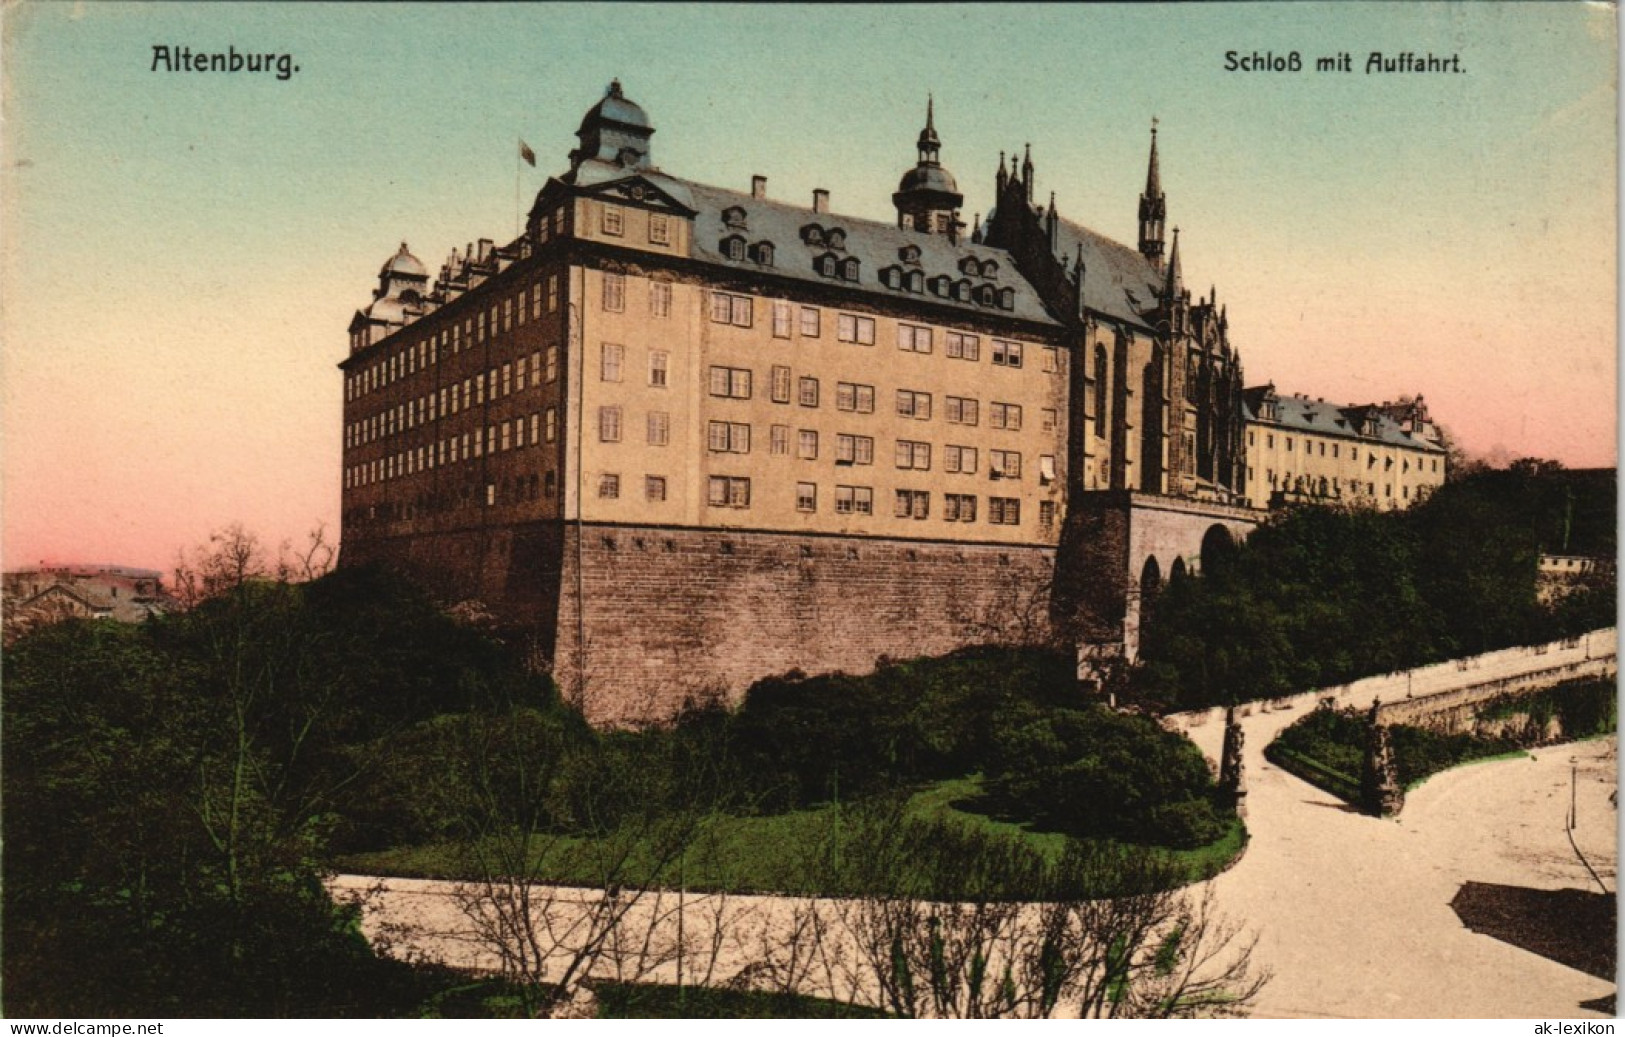 Ansichtskarte Altenburg Schloß Schloss Castle View, Color AK 1905 - Altenburg